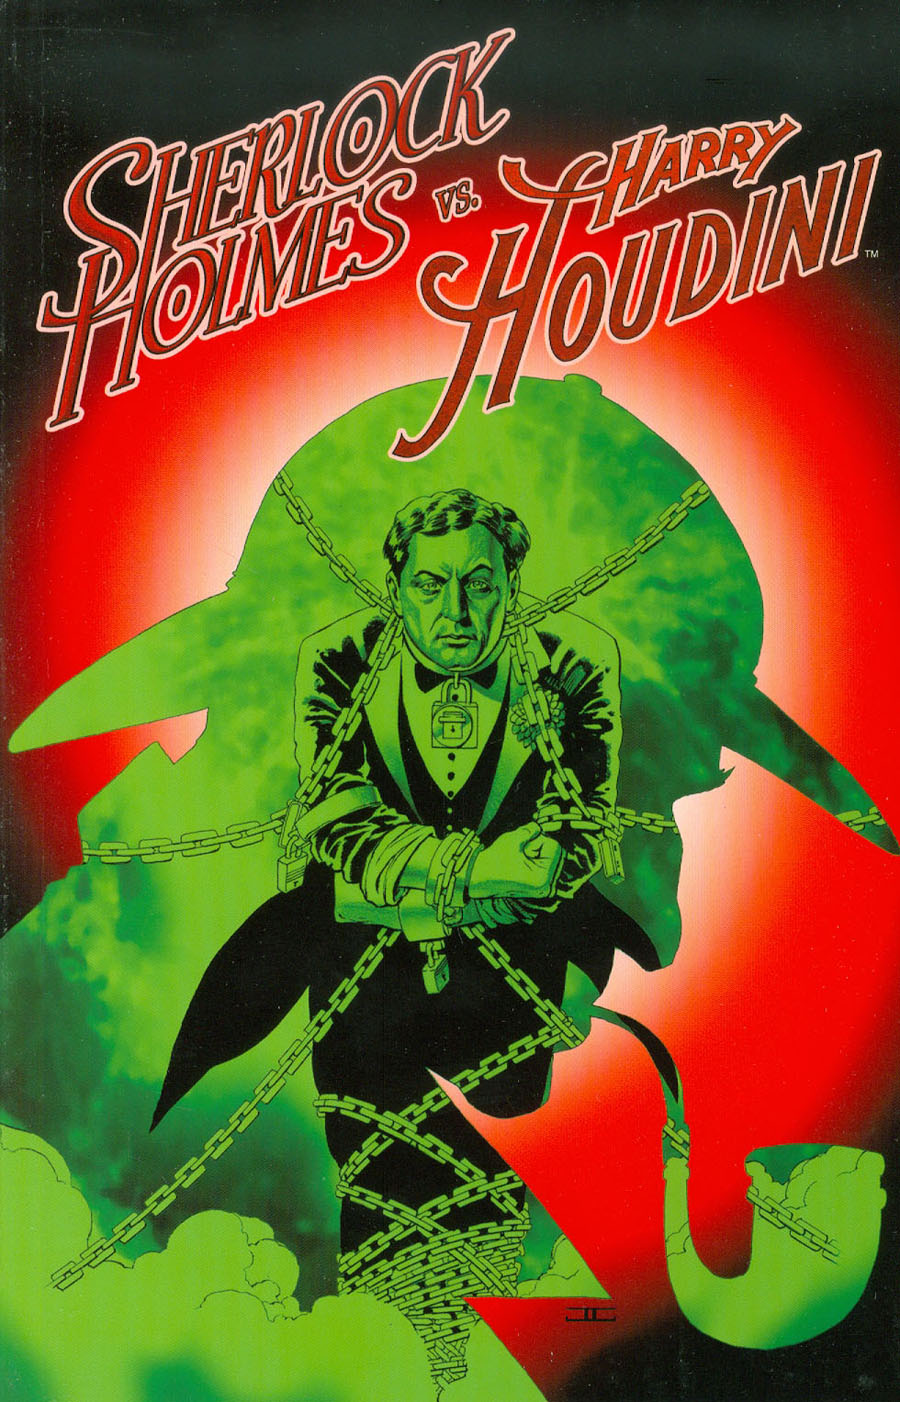 Sherlock Holmes vs Harry Houdini Vol 1 TP